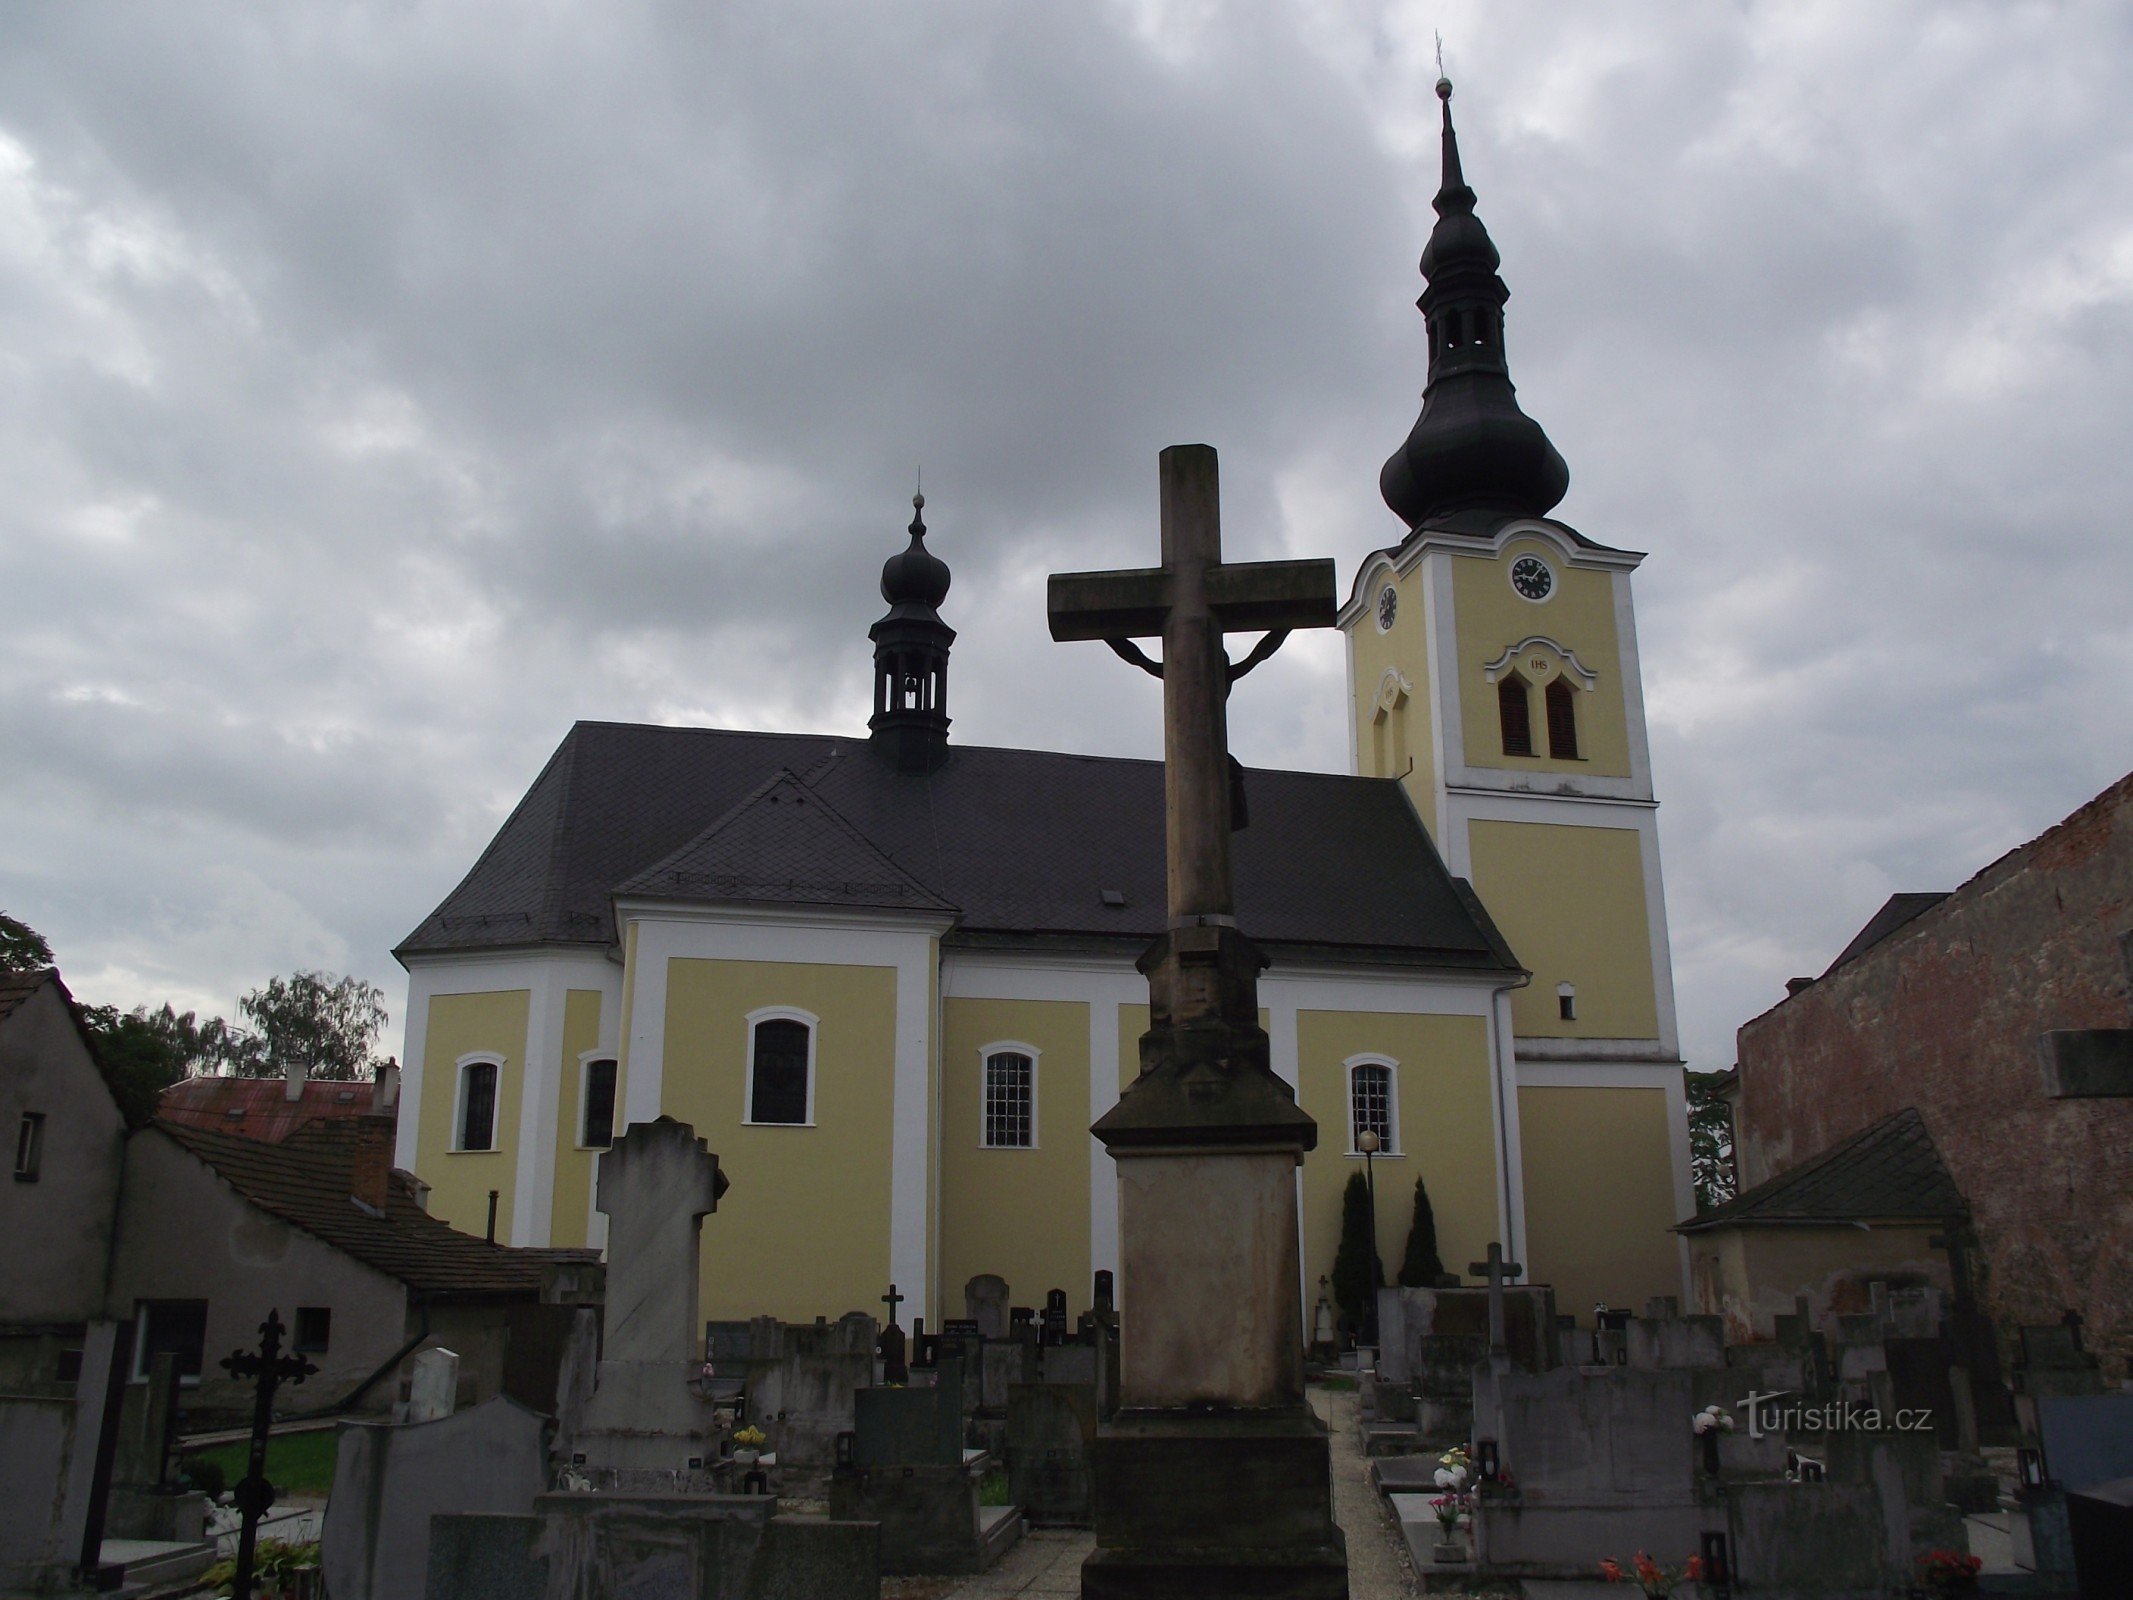 Moravičany – een dorp vol (niet alleen kleine) monumenten